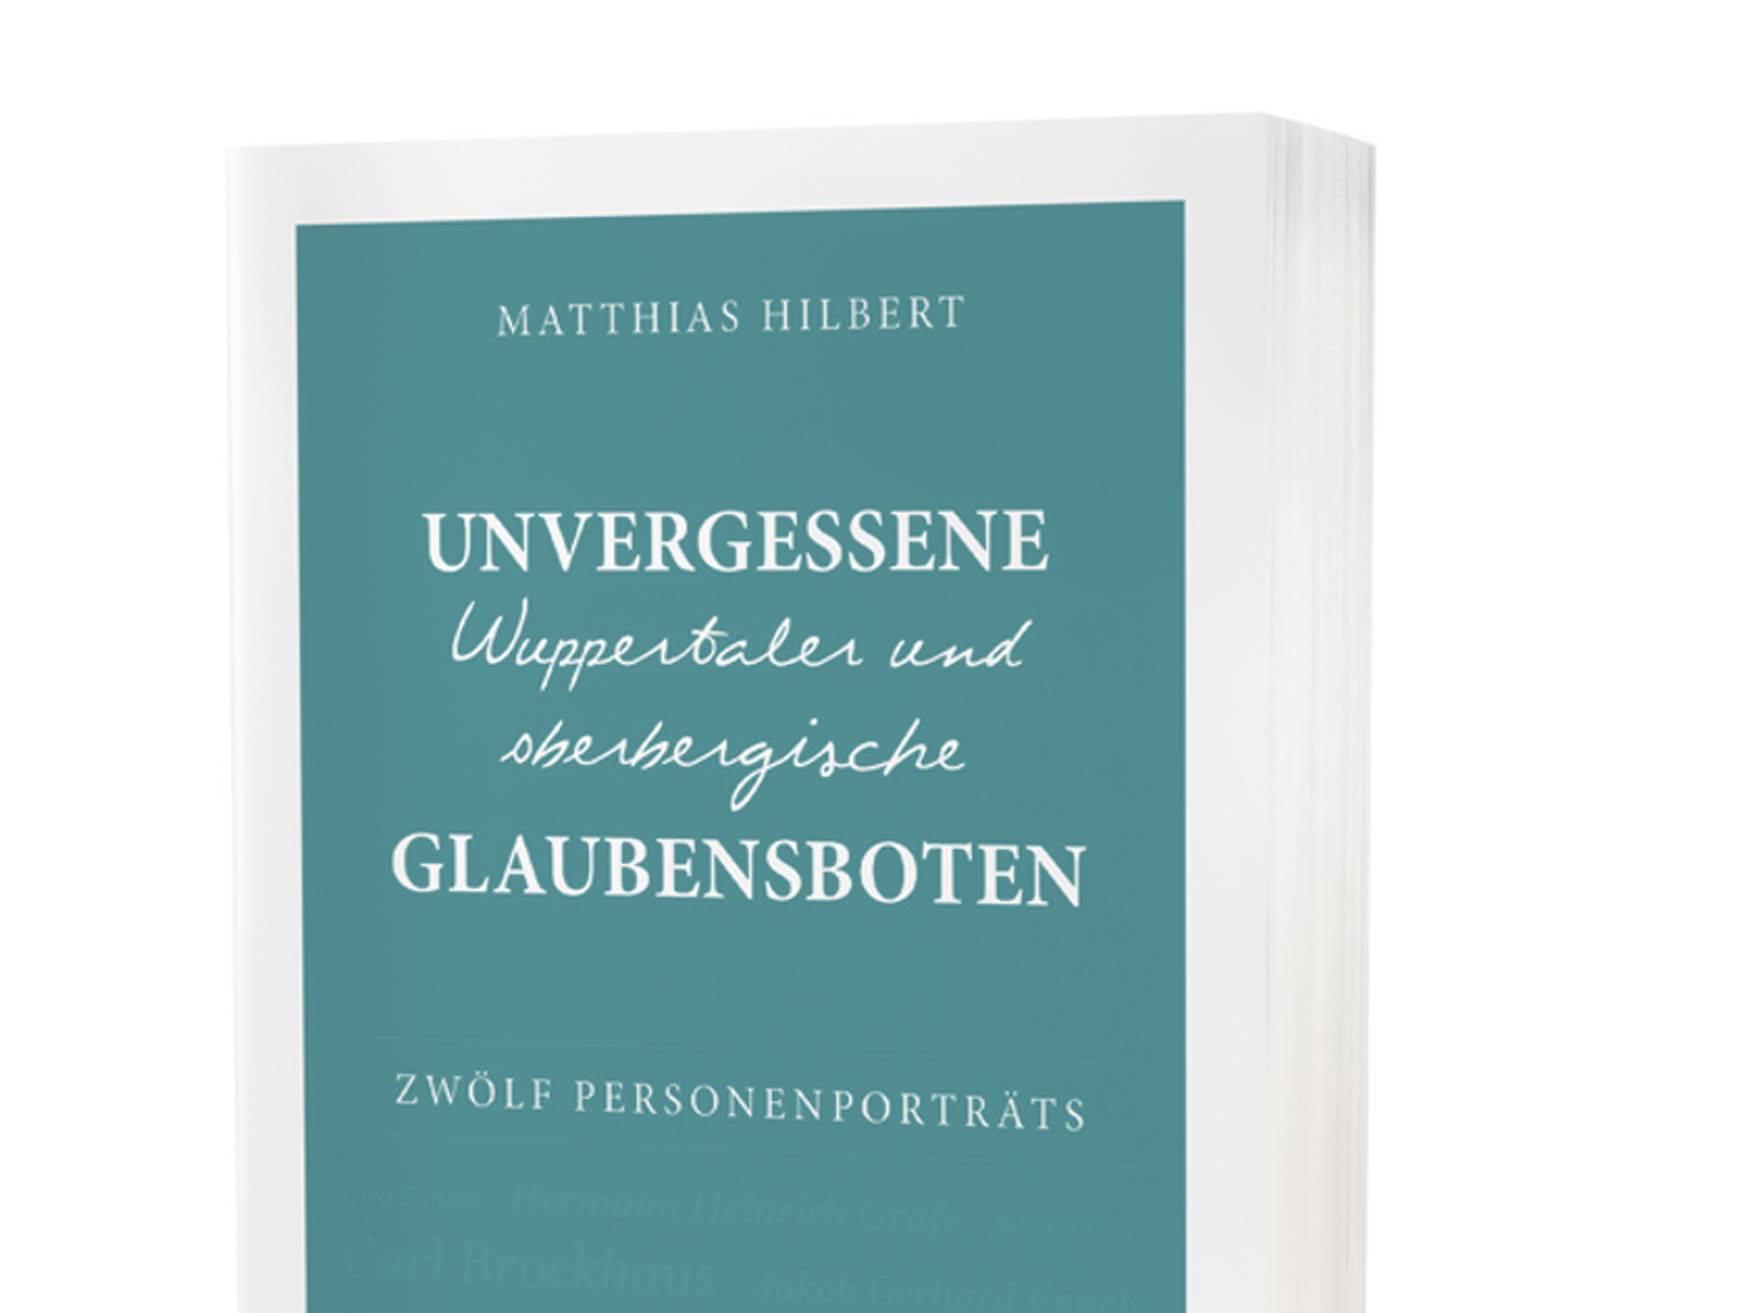  „Unvergessene Wuppertaler und oberbergische Glaubensboten“ von Matthias Hilpert ist in der Christlichen Verlagsgesellschaft (CV) Dillenburg erschienen und kostet 19,90 Euro.  